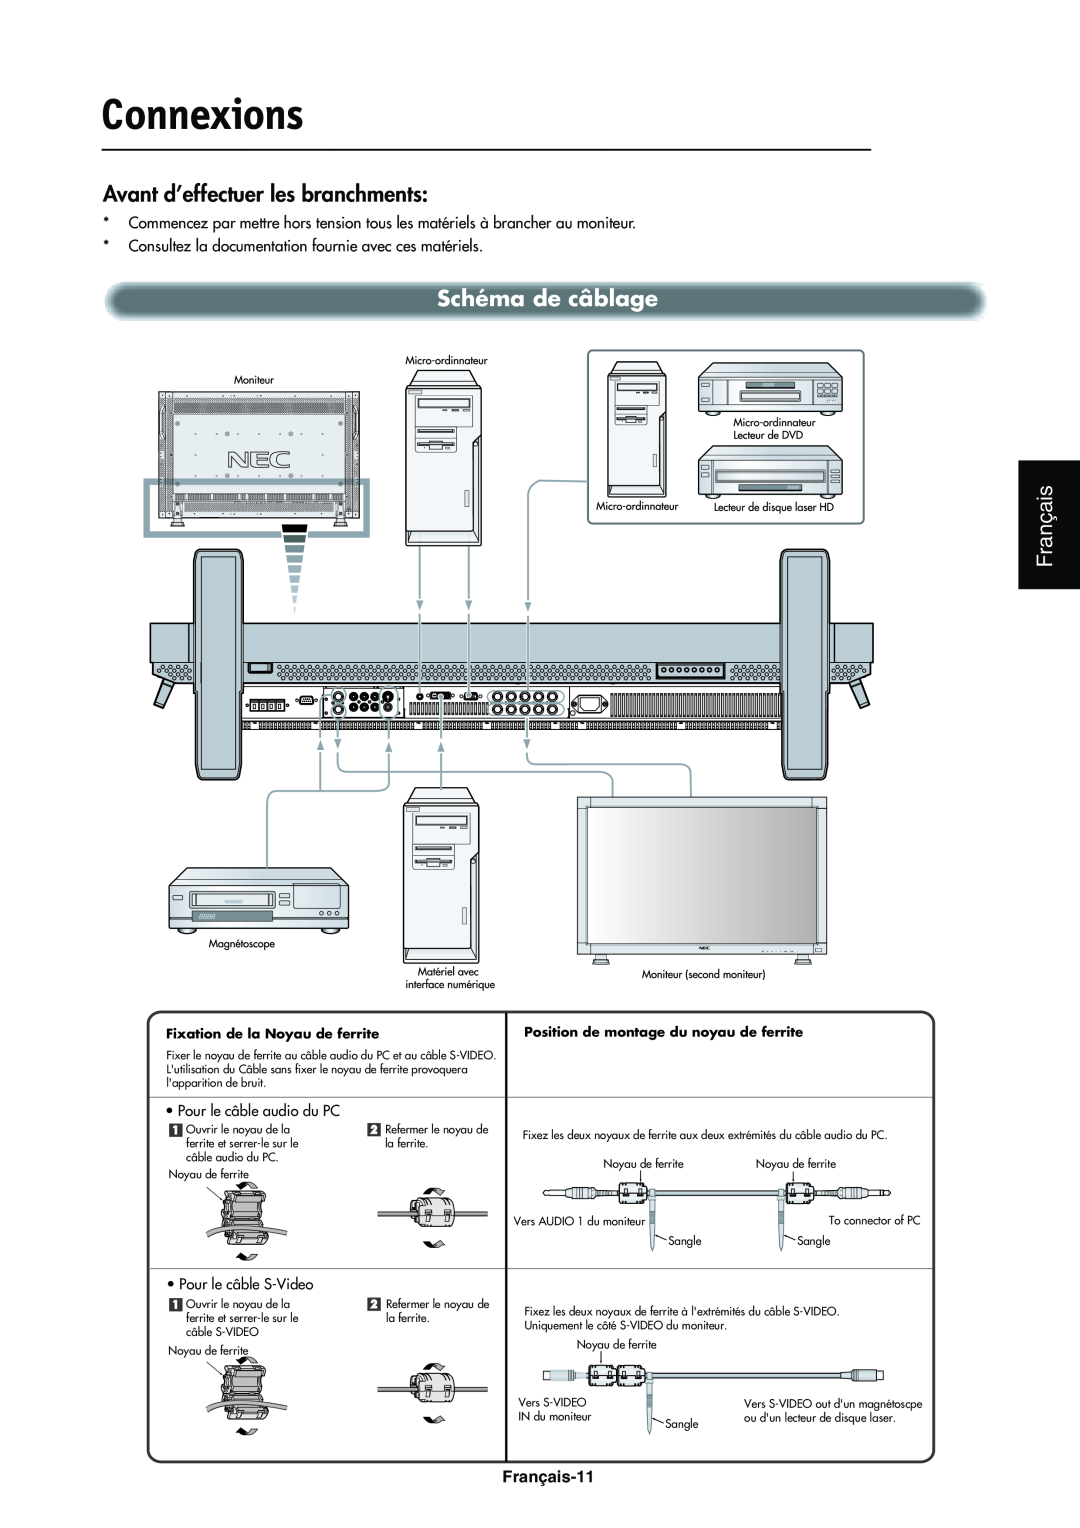 NEC LCD4000e manual Connexions, Schéma de câblage, Français-11, Fixation de la Noyau de ferrite 